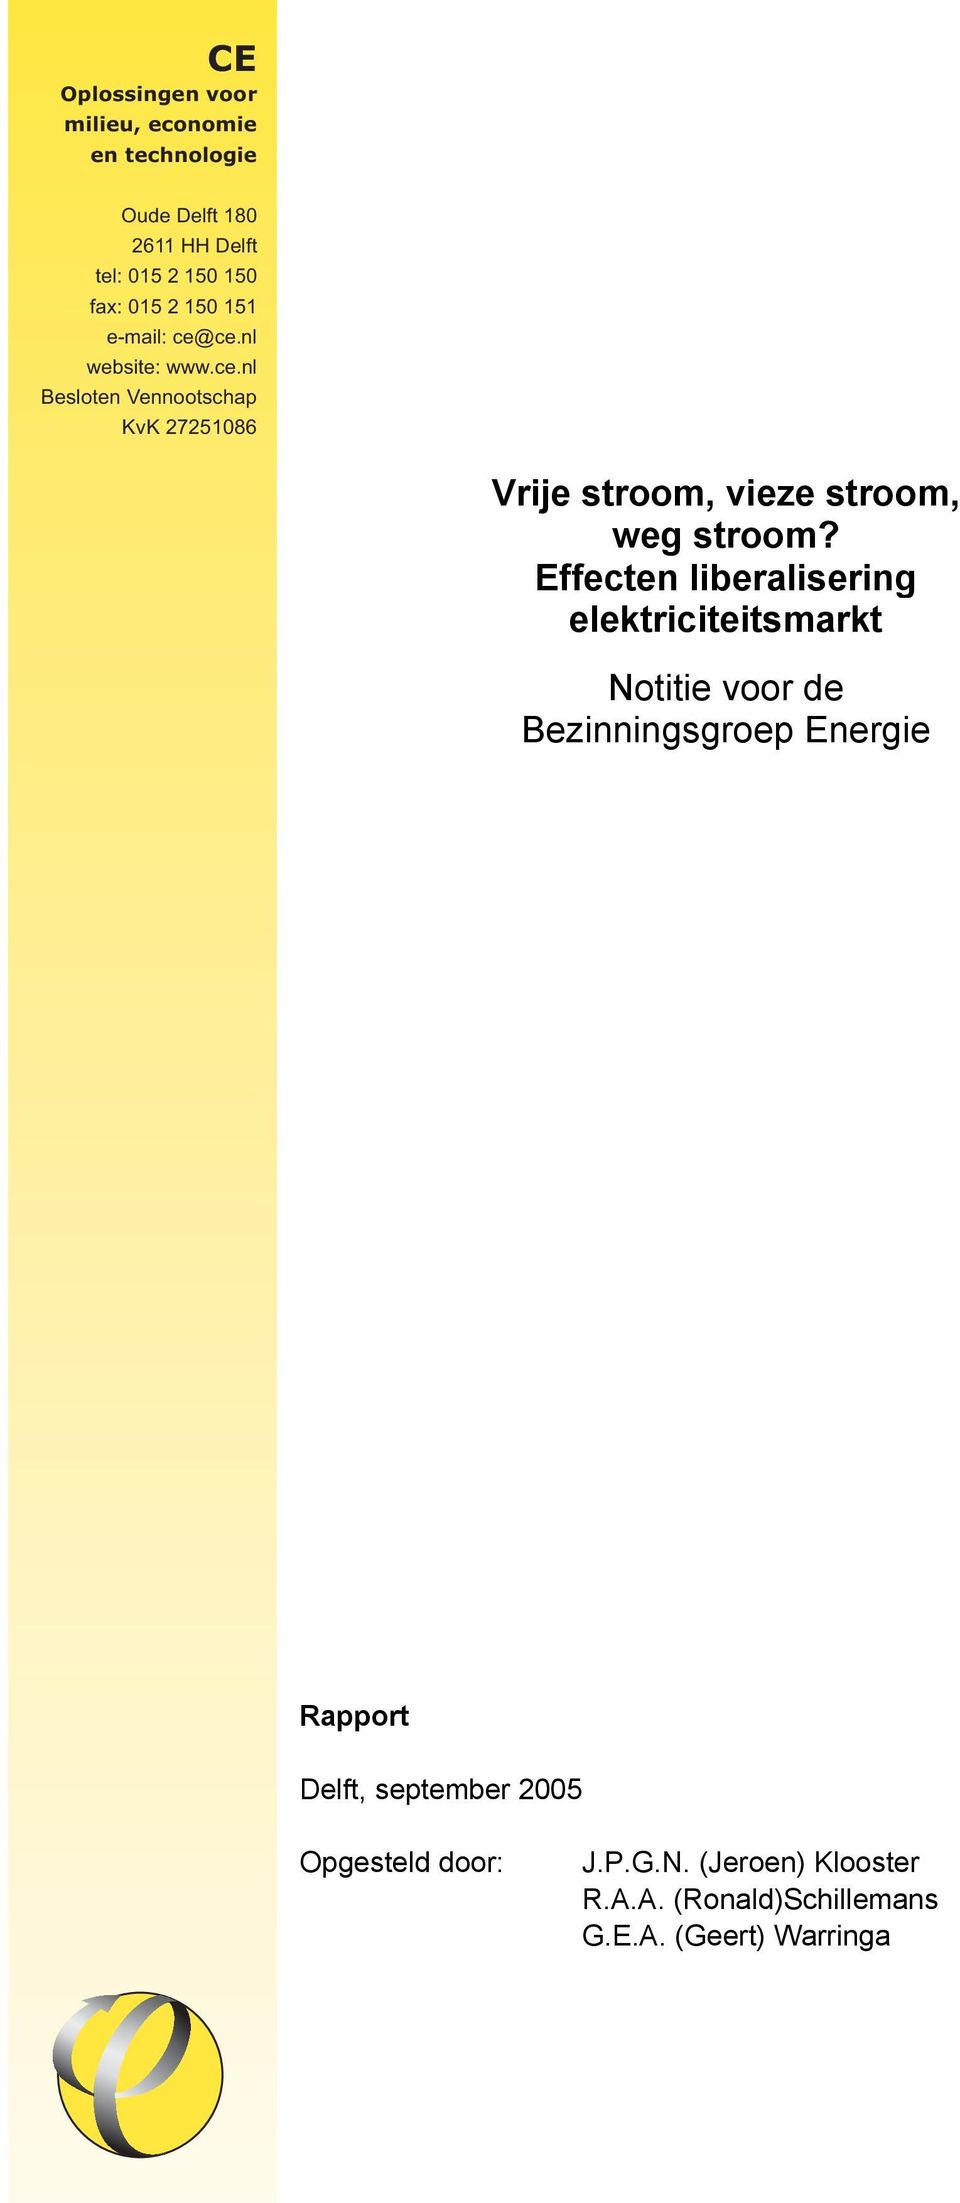 Effecten liberalisering elektriciteitsmarkt Notitie voor de Bezinningsgroep Energie Rapport Delft, september 2005 Opgesteld door: J.P.G.N. (Jeroen) Klooster R.